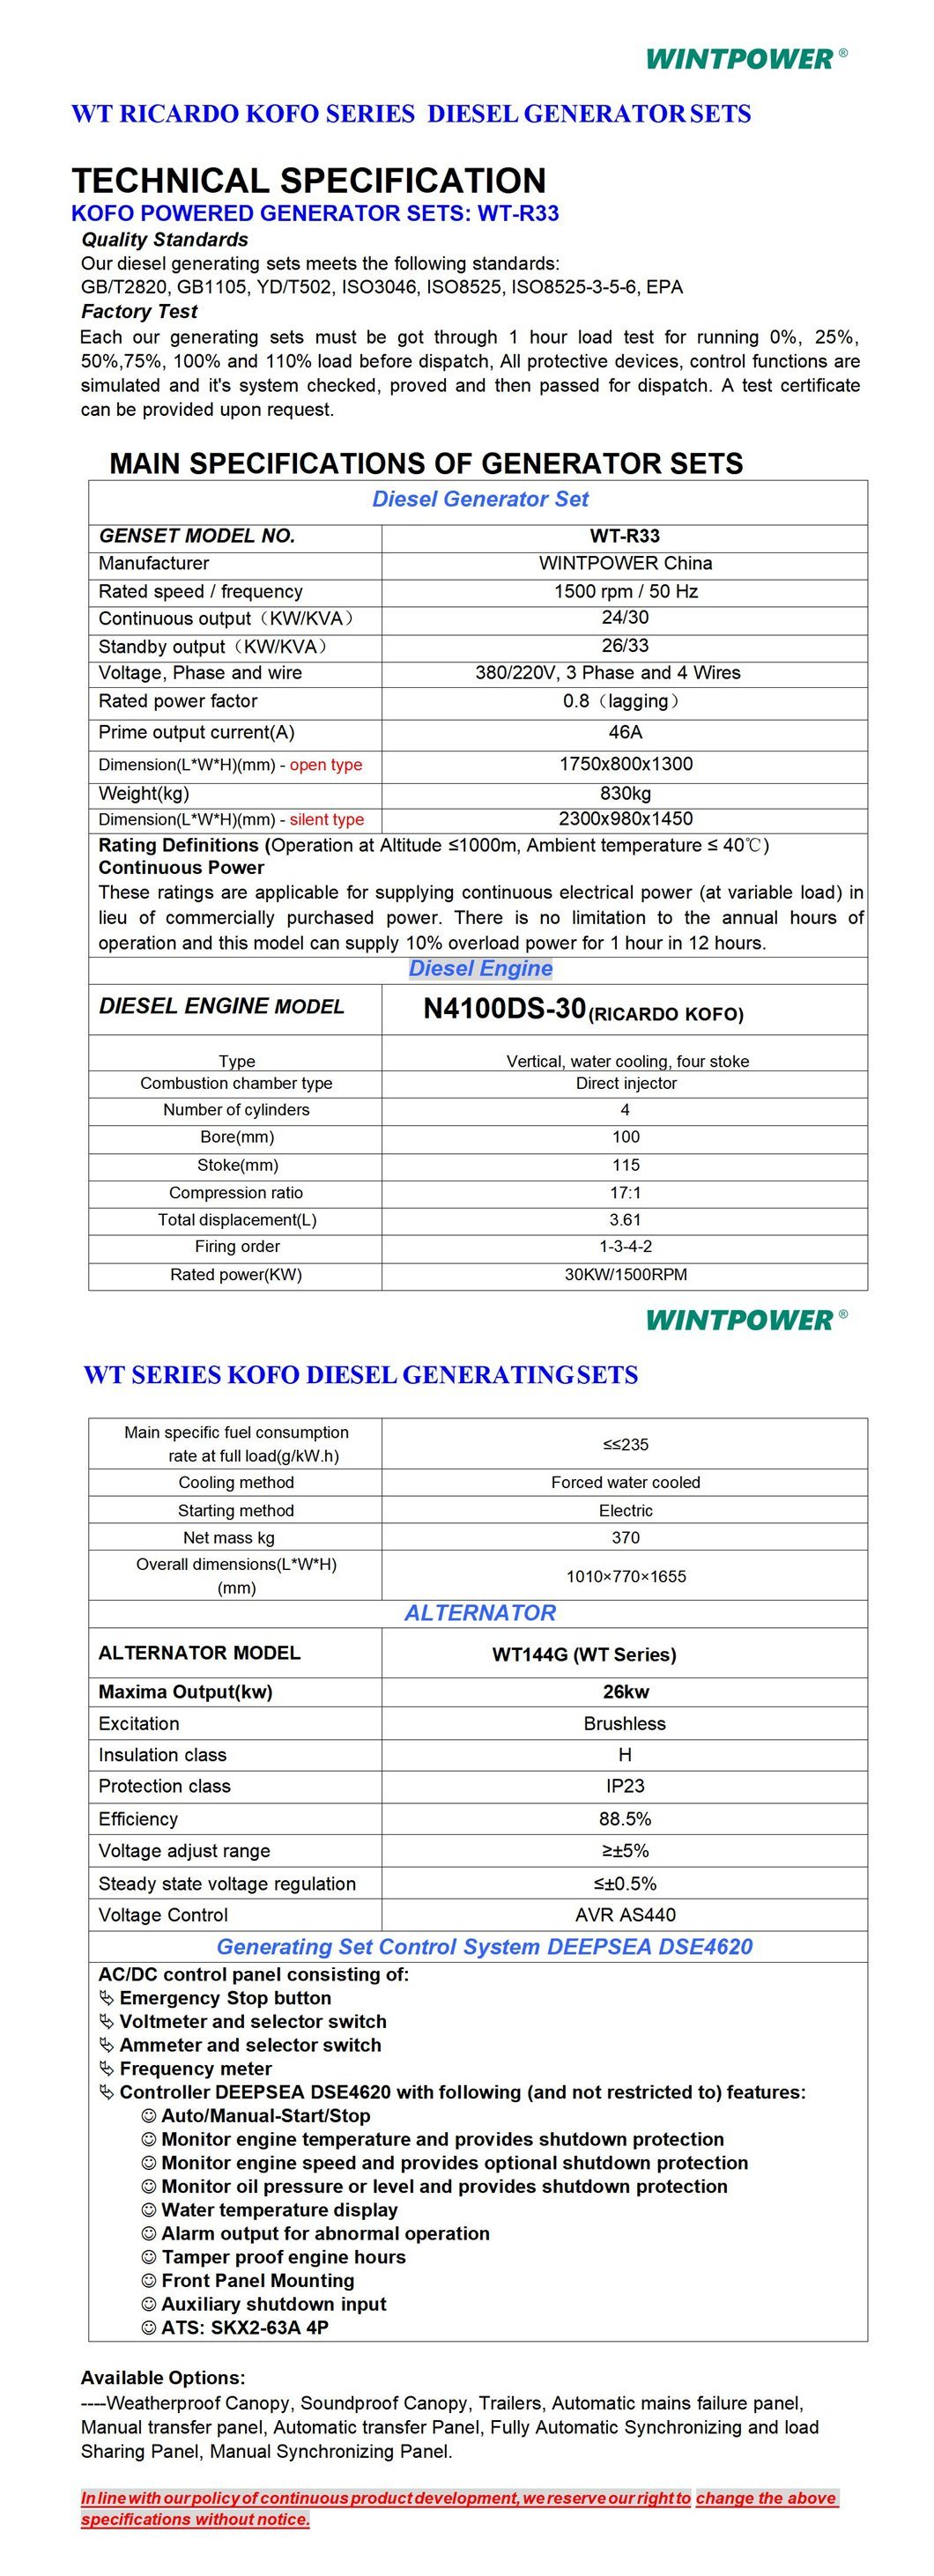 Weichai Kofo Ricardo Diesel Engine Power Generator Set Dg Genset 120kVA 4rt55-110d Zvočno izoliran tih tip 400/230V 380/220V 208/110V 440V 480V 600V 50Hz 60Hz